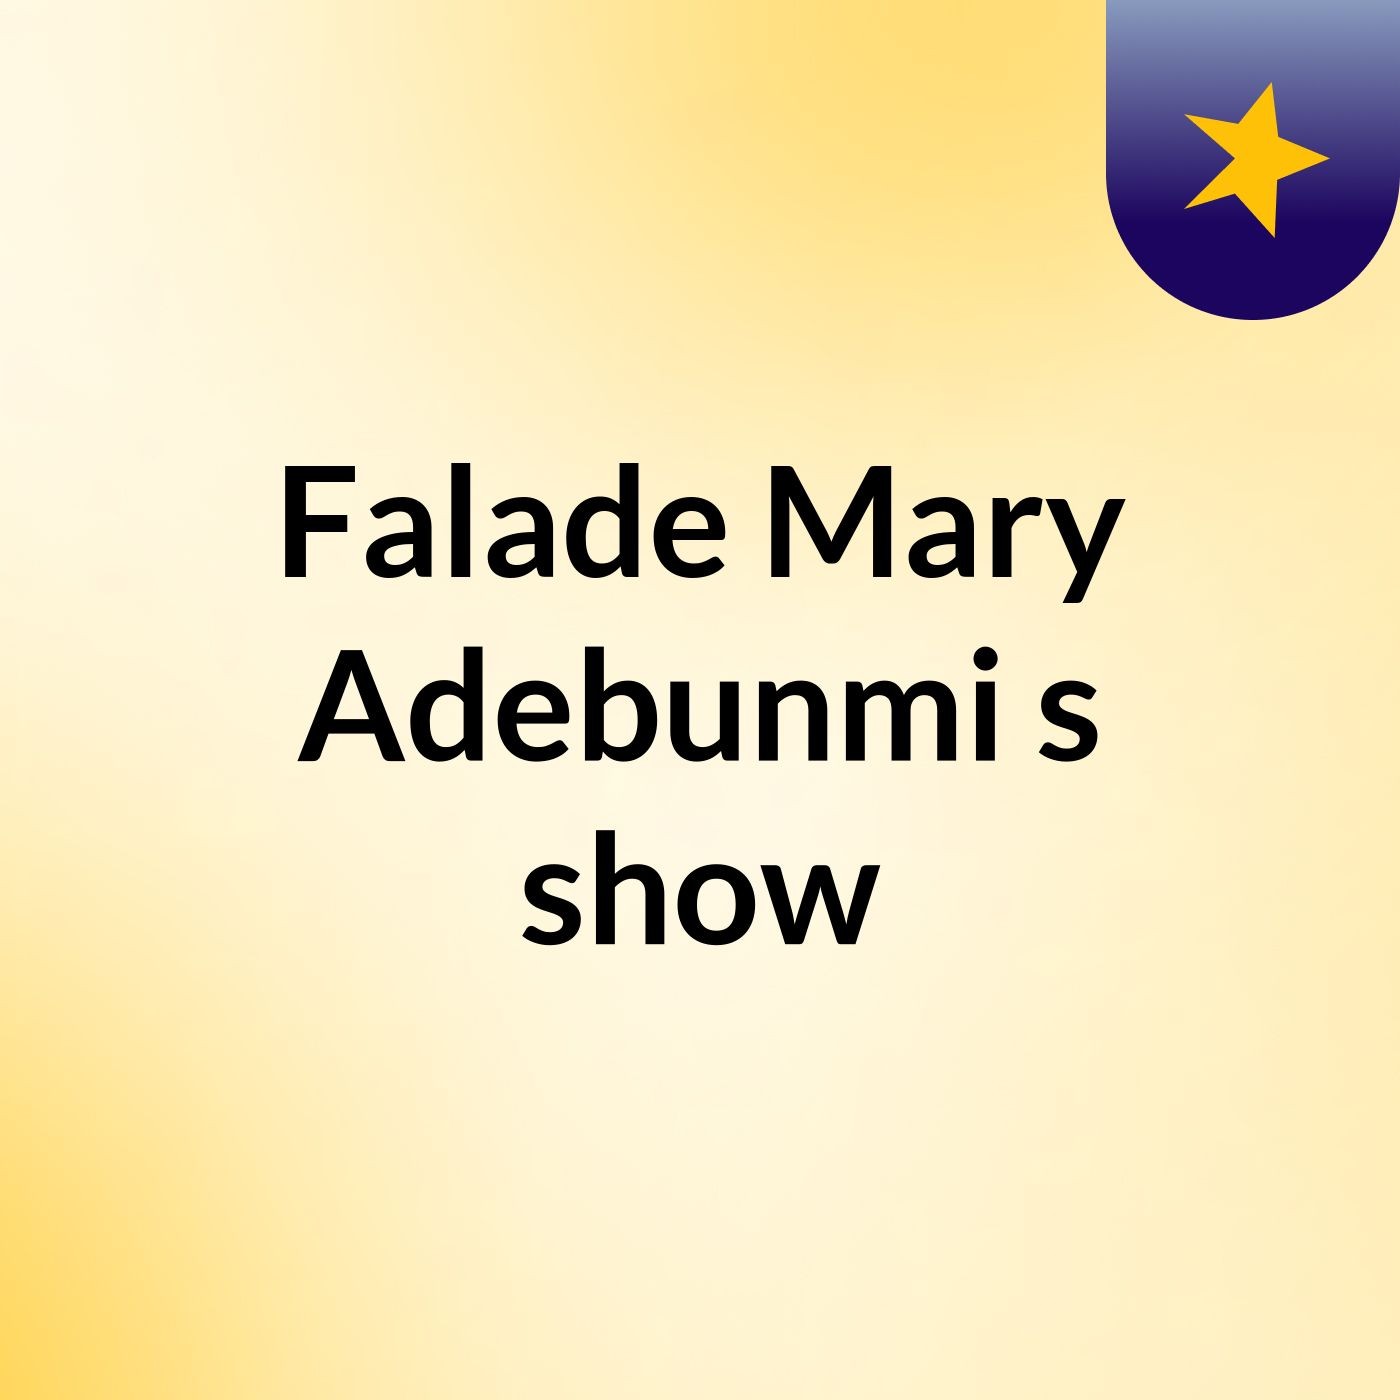 Falade Mary Adebunmi's show